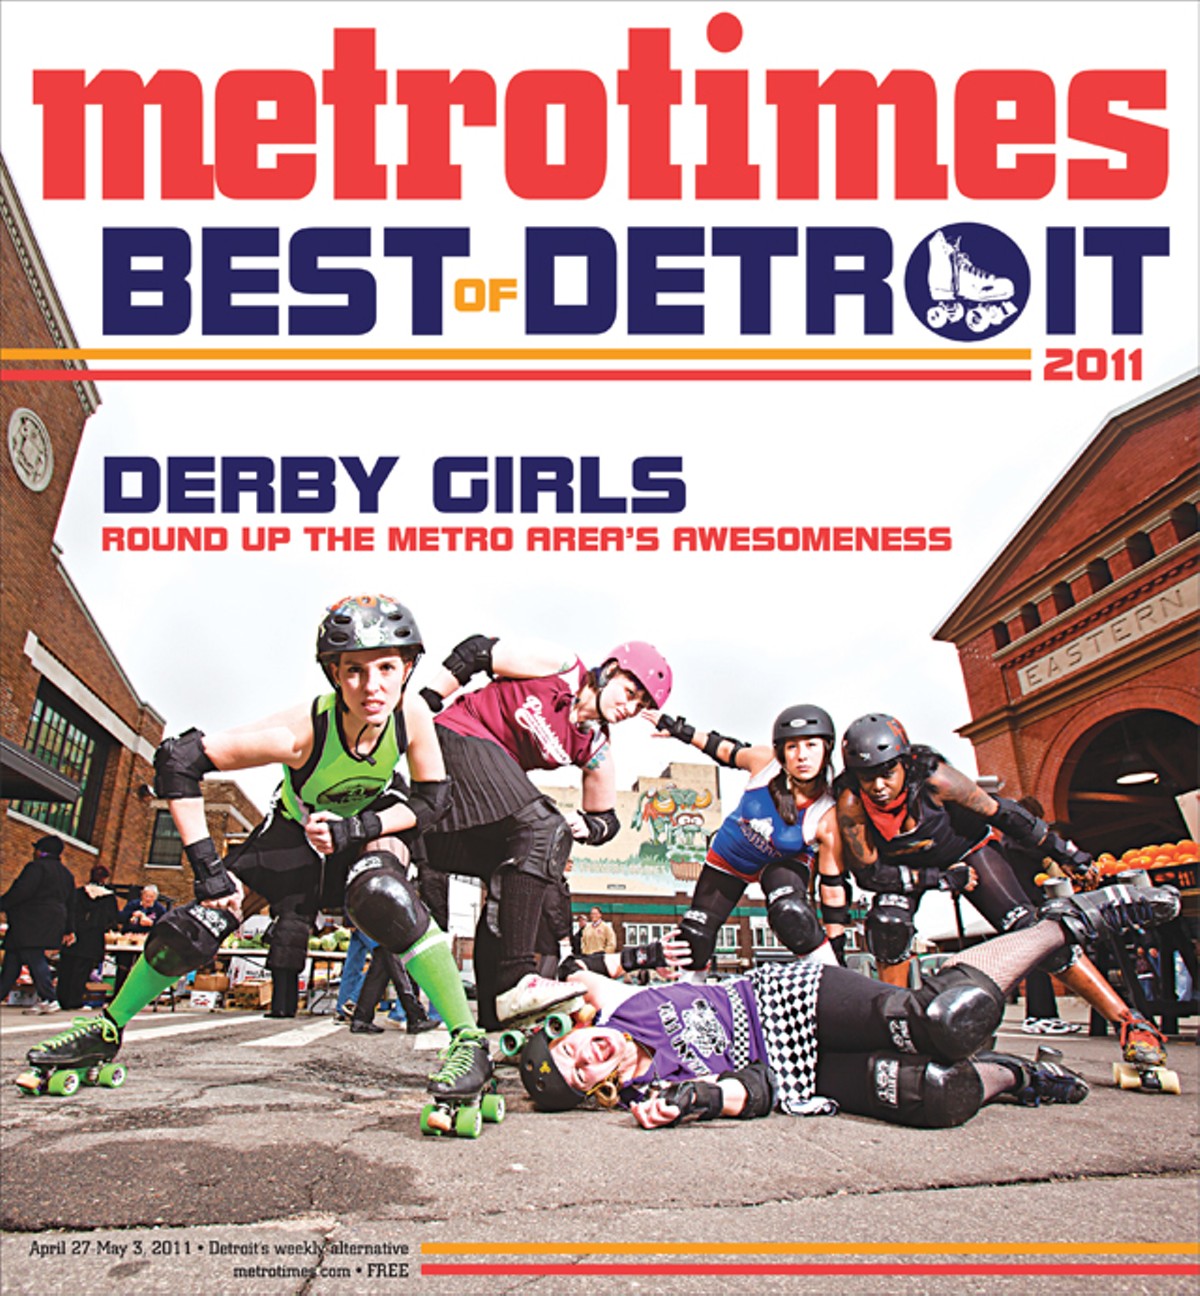 Best of Detroit 2011